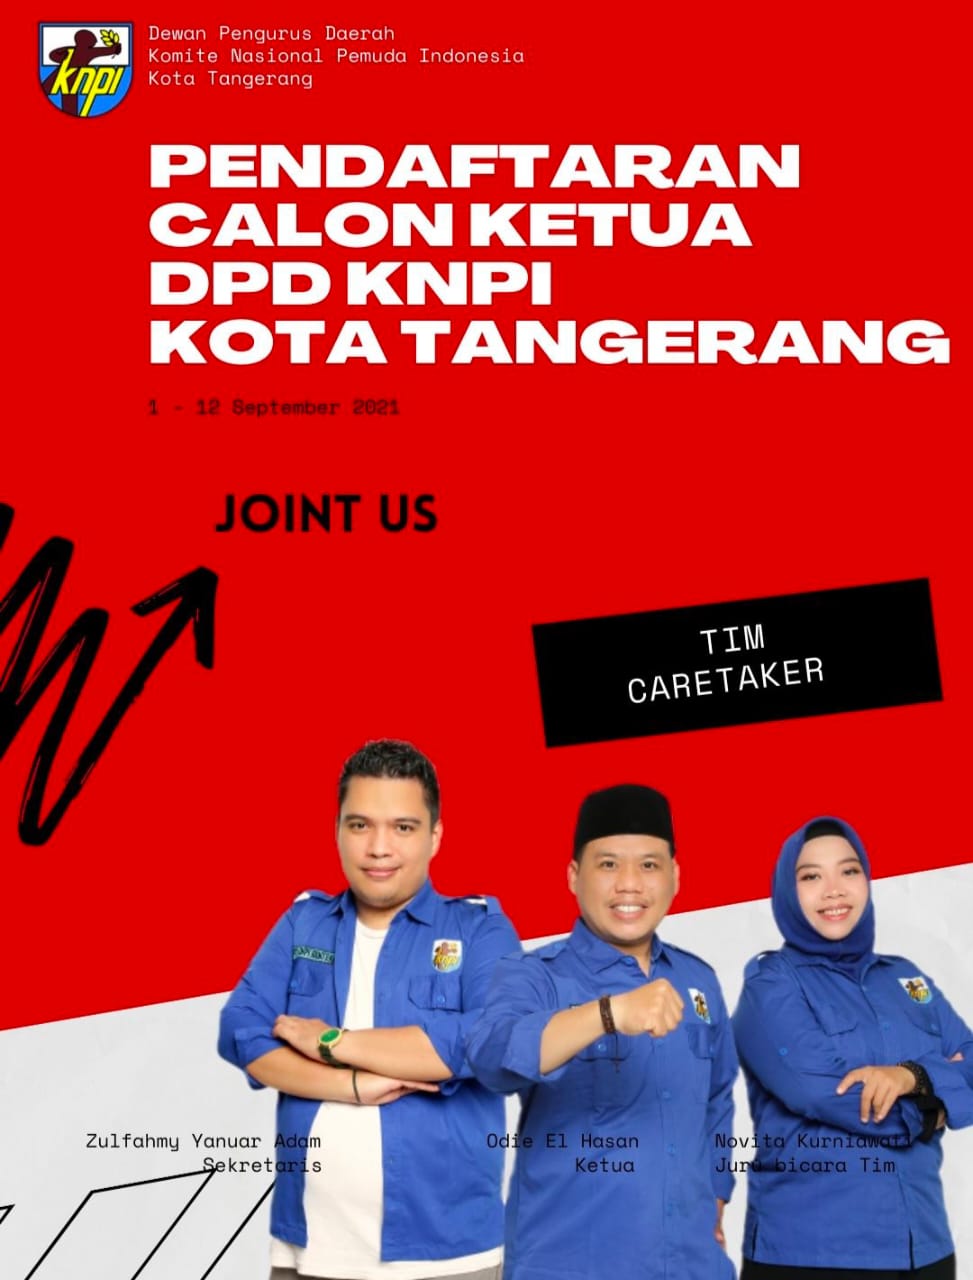 Gambar Pendaftaran Calon Ketua DPD KNPI Kota Tangerang Dibuka Mulai Hari Ini 1